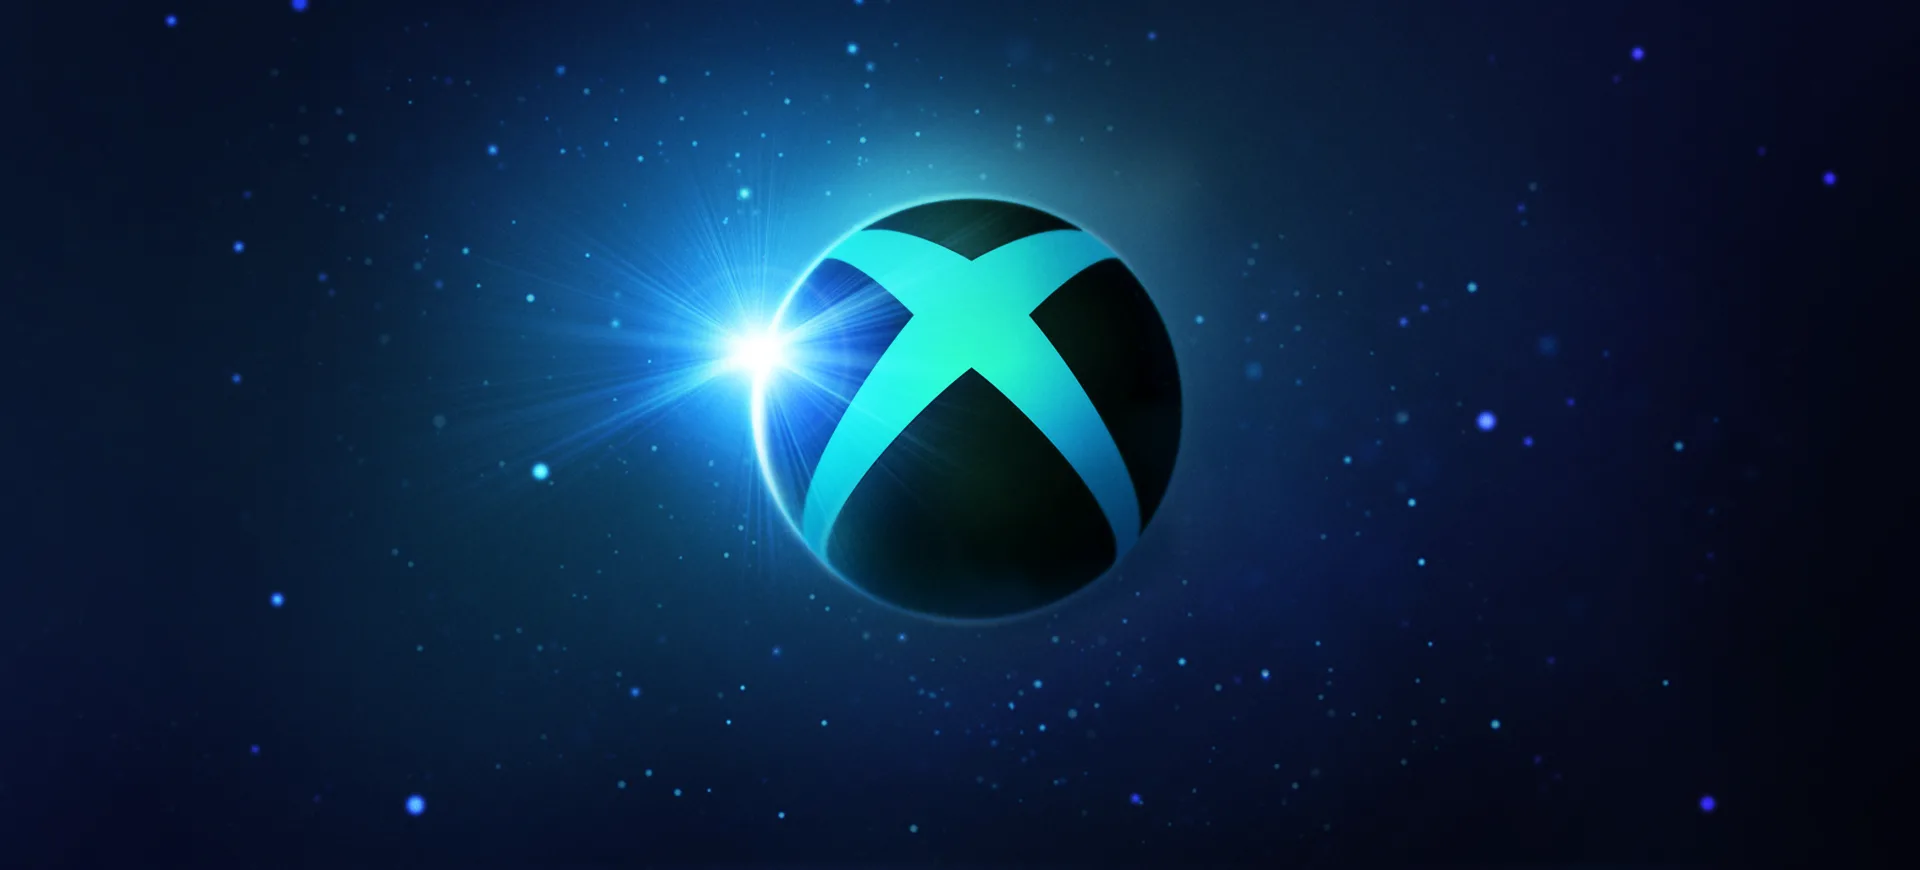 Xbox e Bethesda Showcase annunciato un nuovo evento! NerdPool